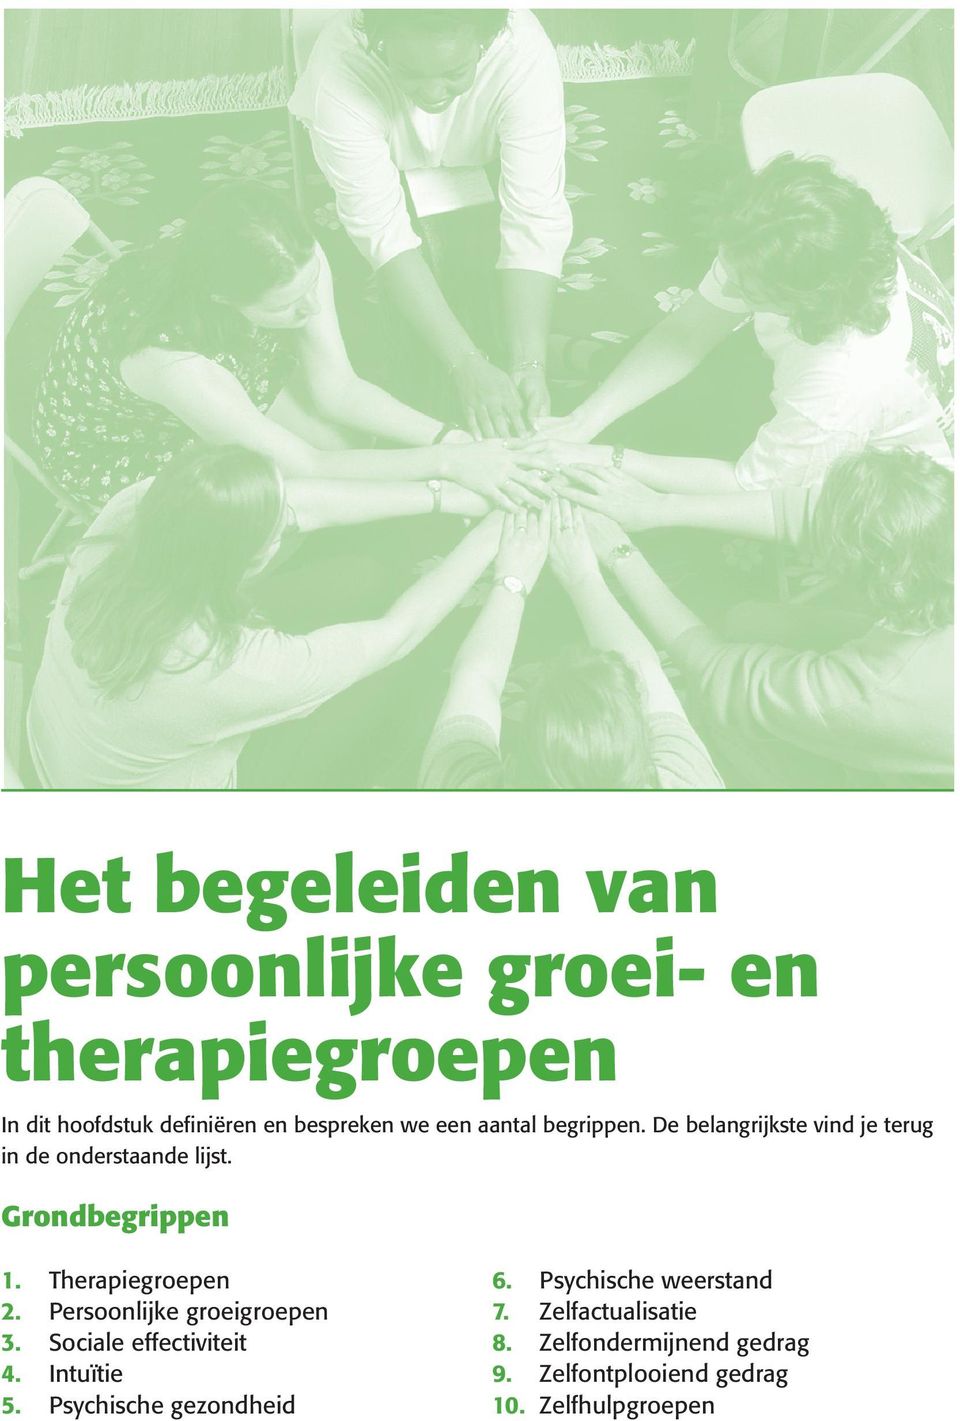 Therapiegroepen Persoonlijke groeigroepen Sociale effectiviteit Intuïtie Psychische gezondheid 6. 7. 8. 9.